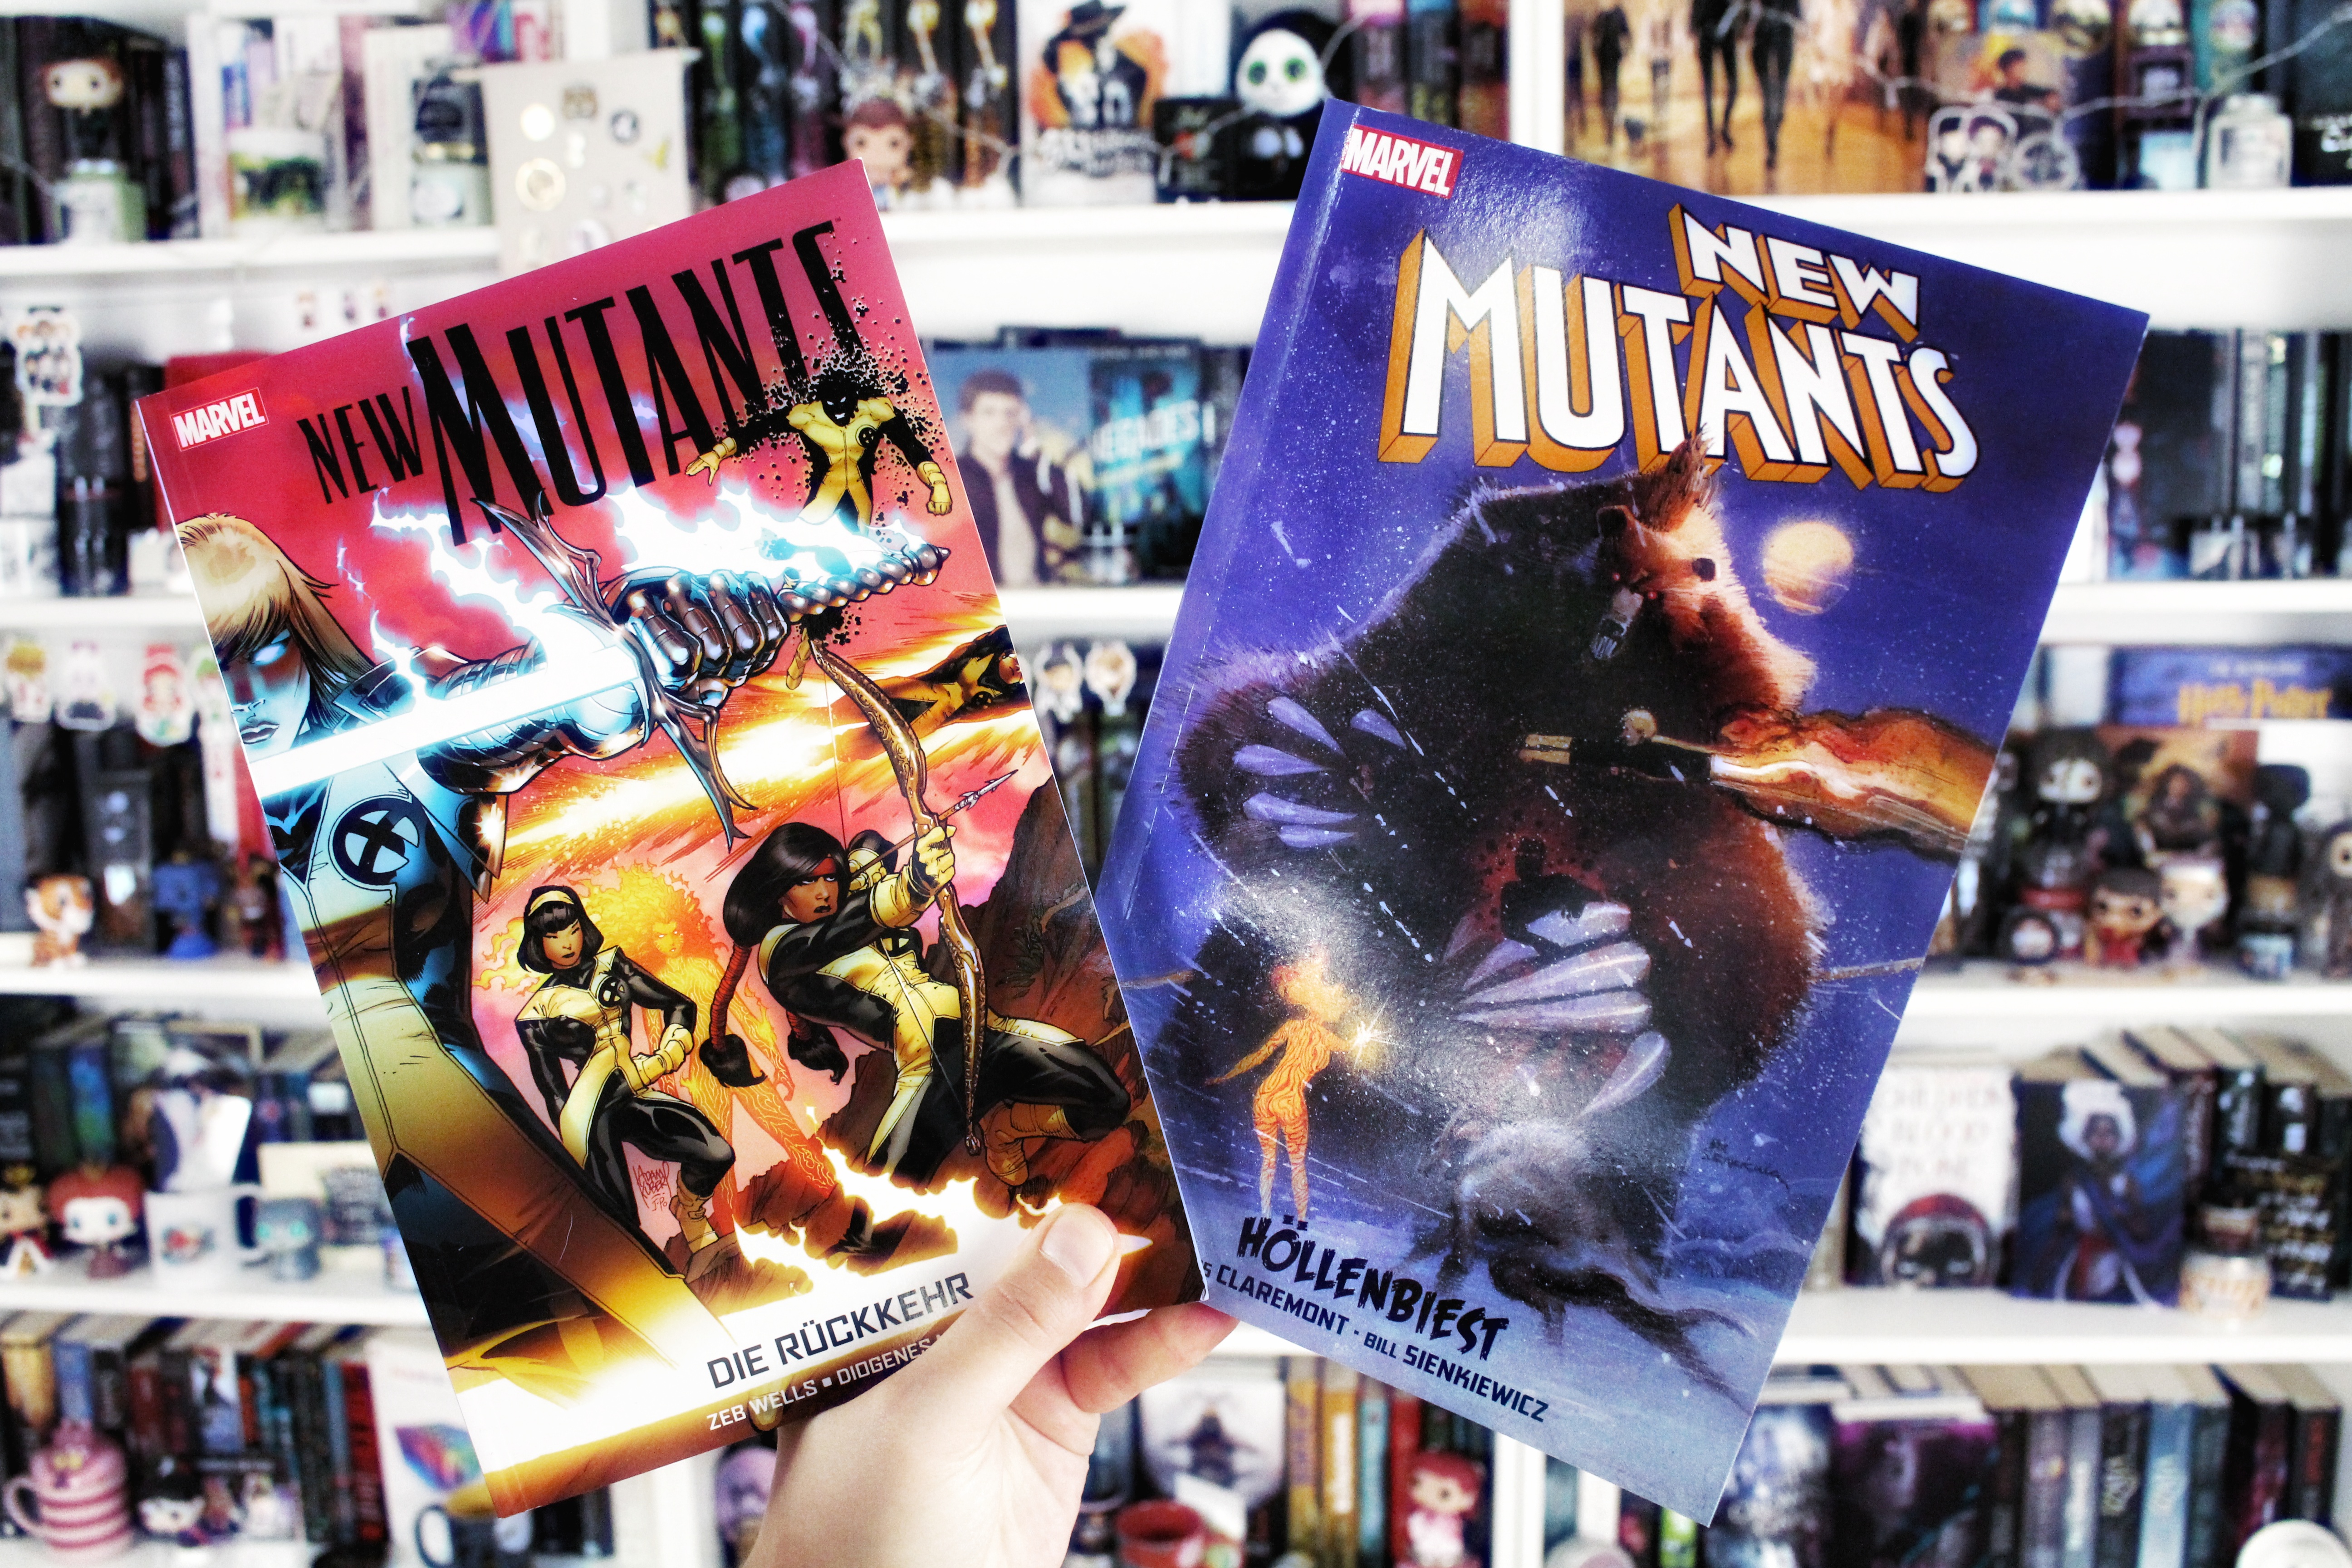 Rezension | New Mutants im Doppelpack: Die Rückkehr & Höllenbiest